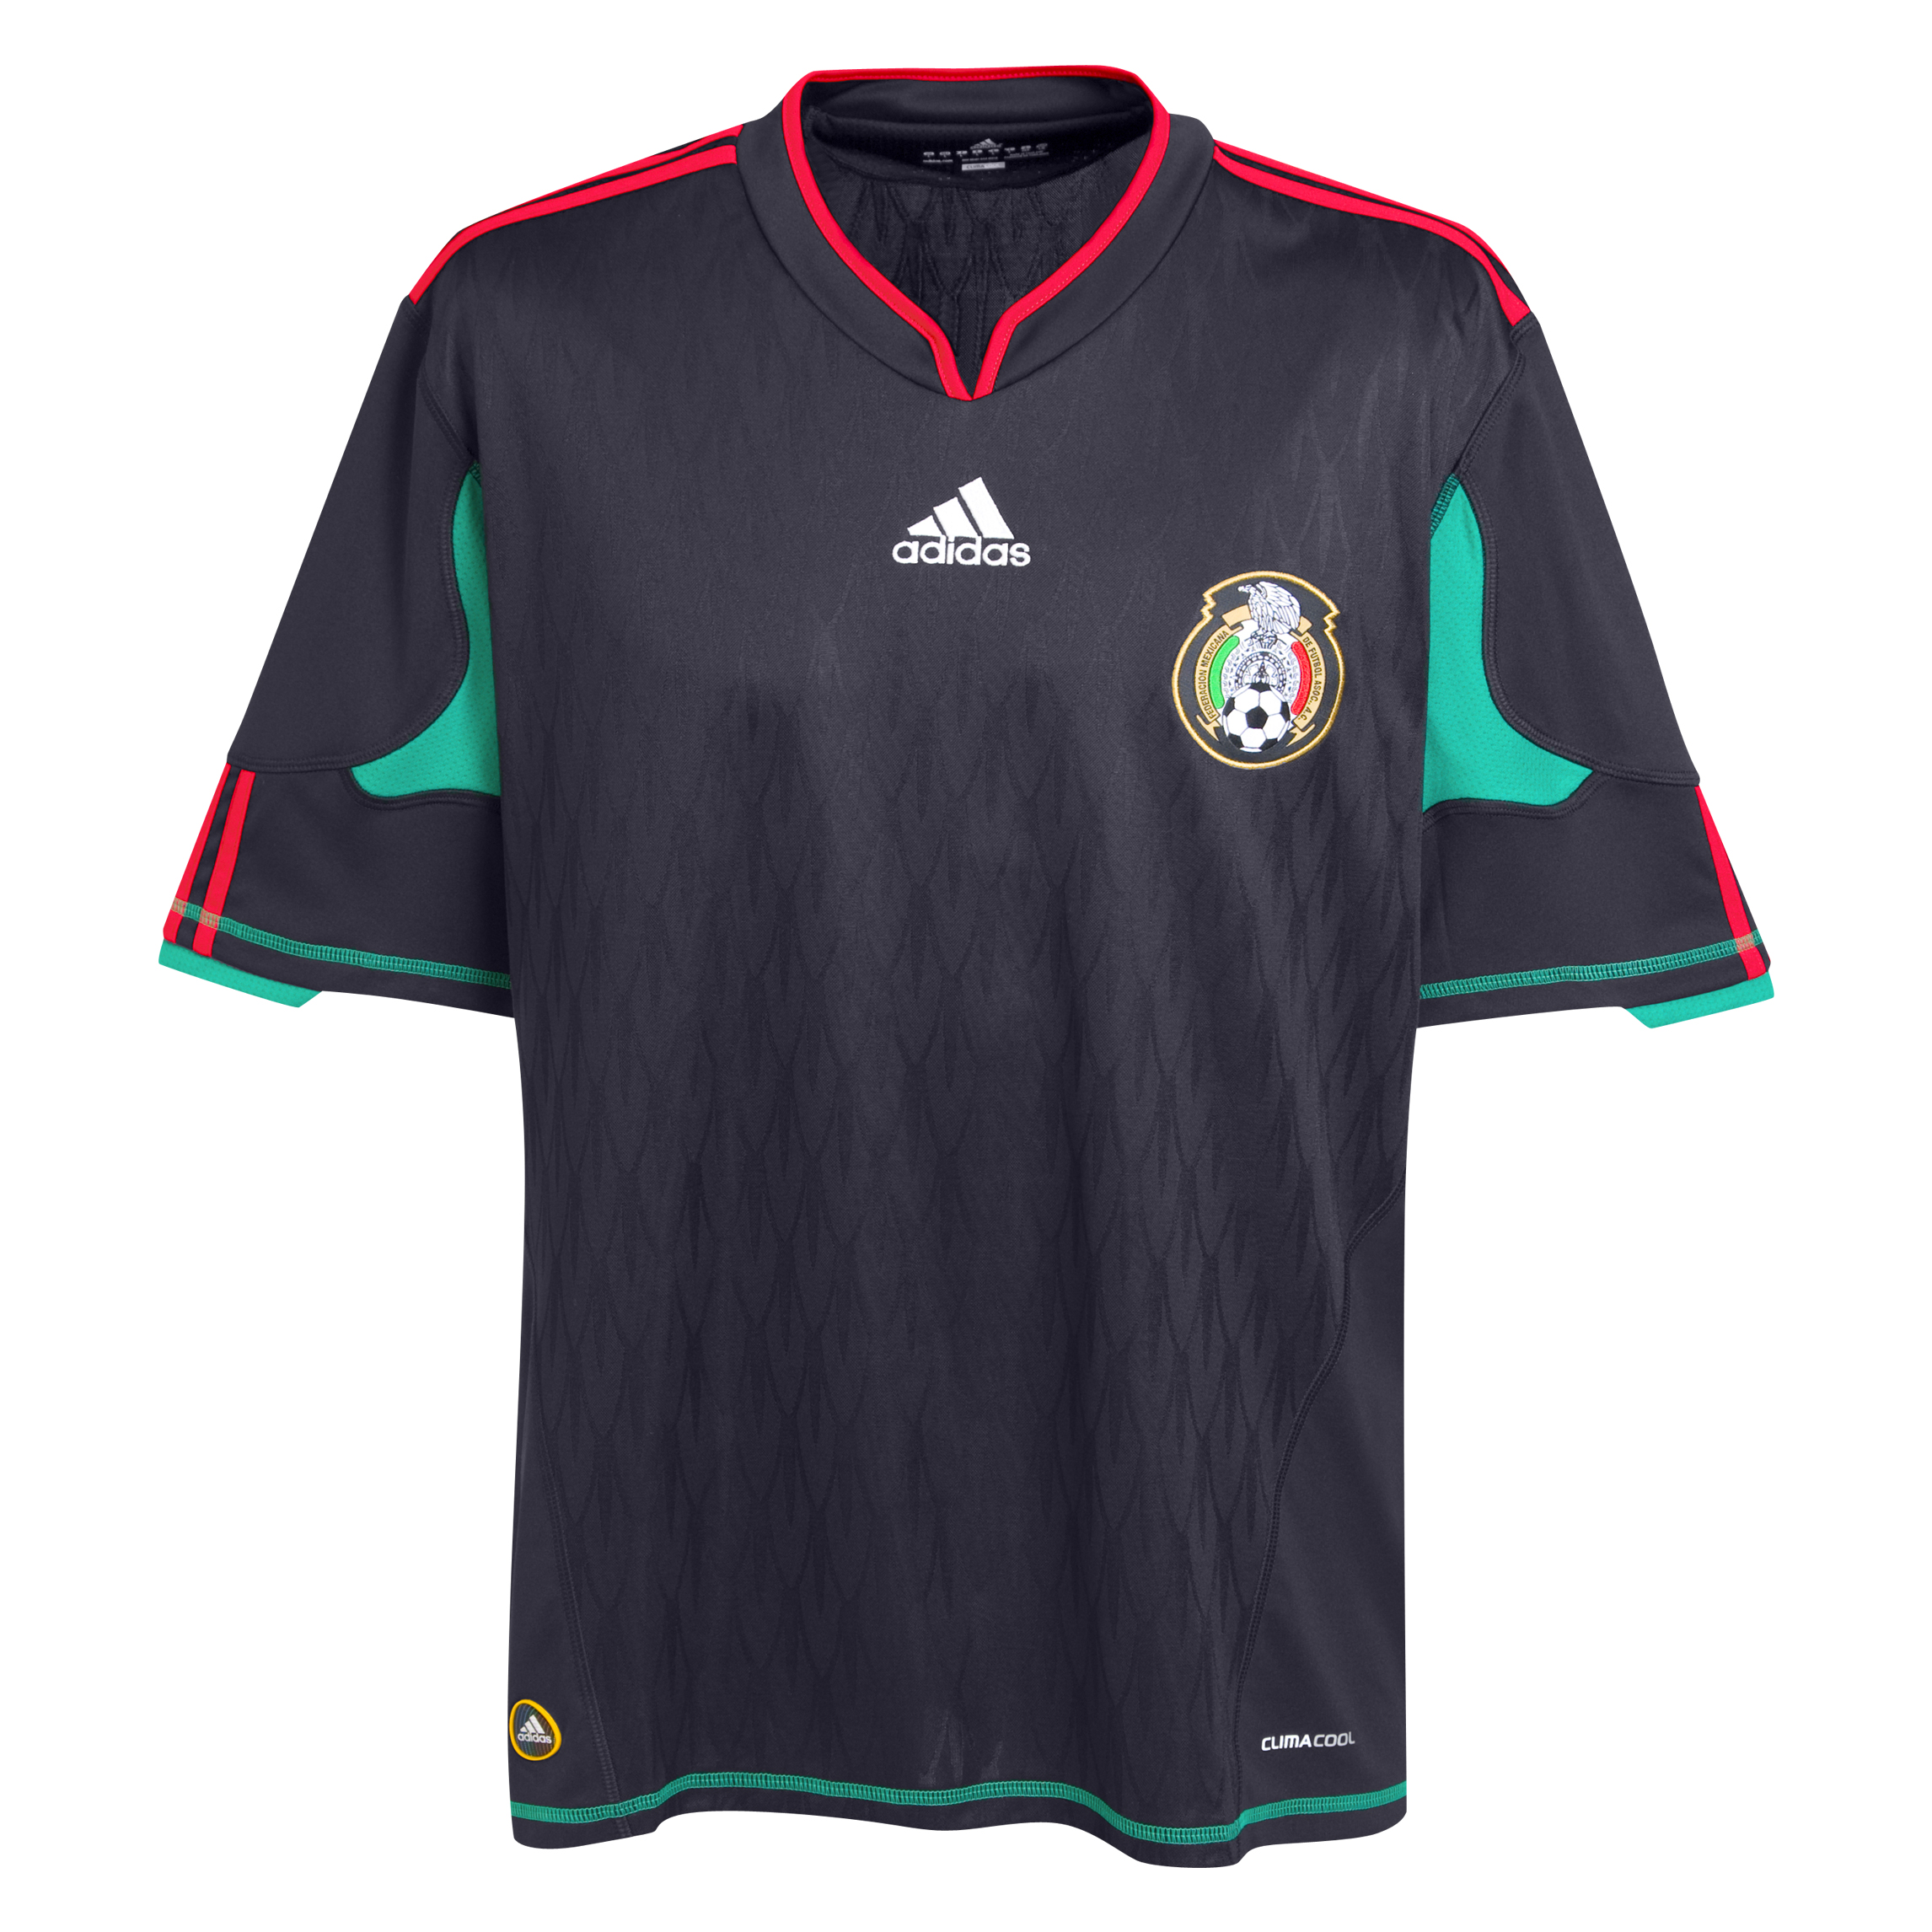 ملابس المنتخبات لكأس العالم ‎(2010)‎ Kb-66944